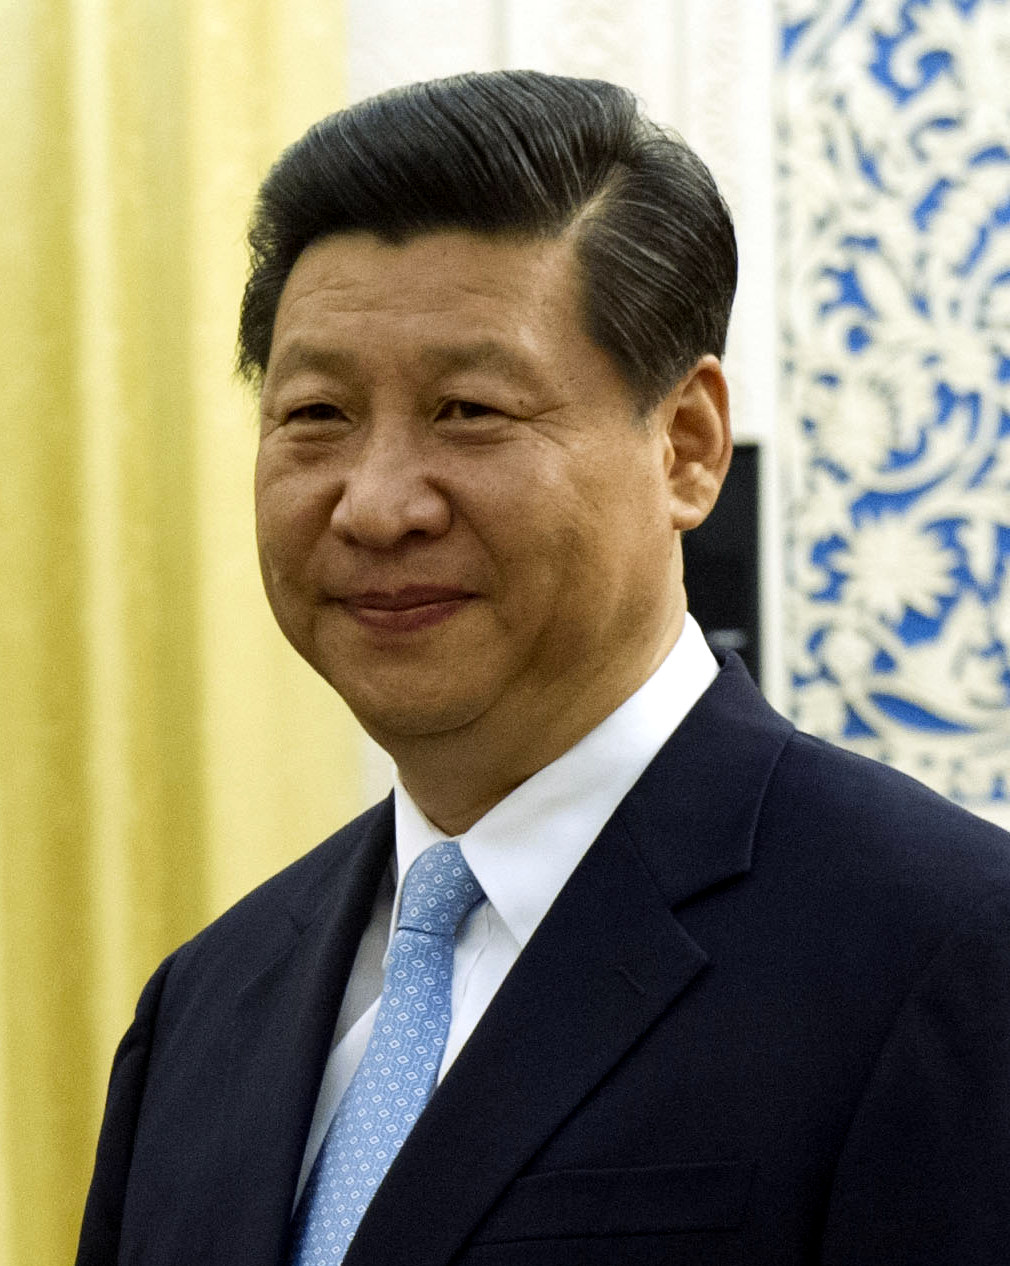 Auf dem Bild ist Xi Jinping zu sehen